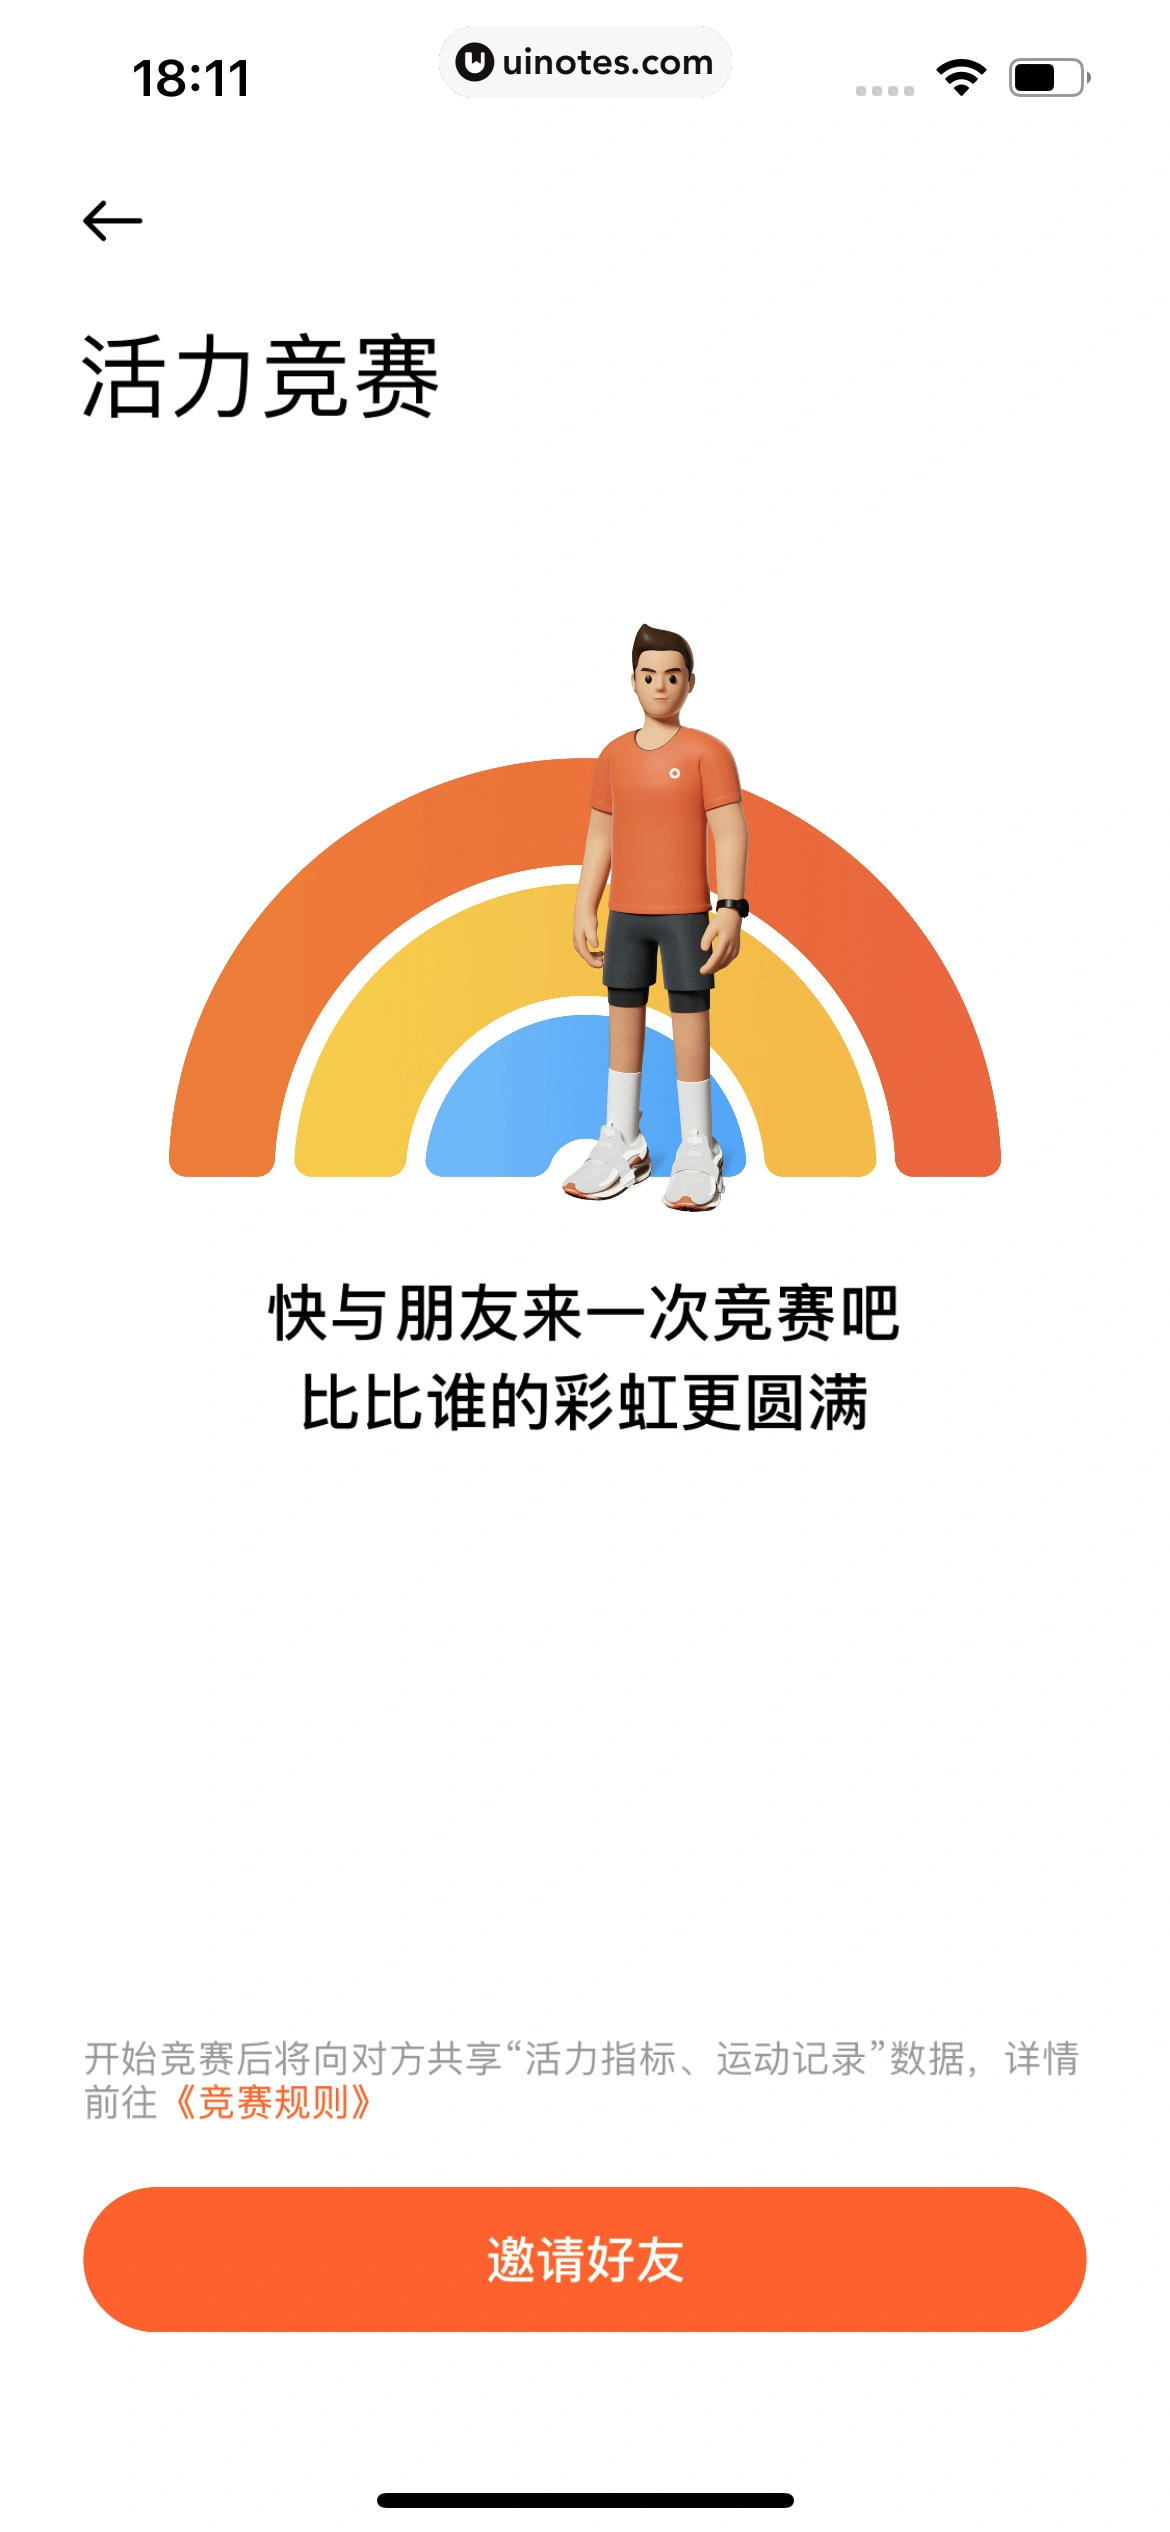 小米运动健康 App 截图 058 - UI Notes